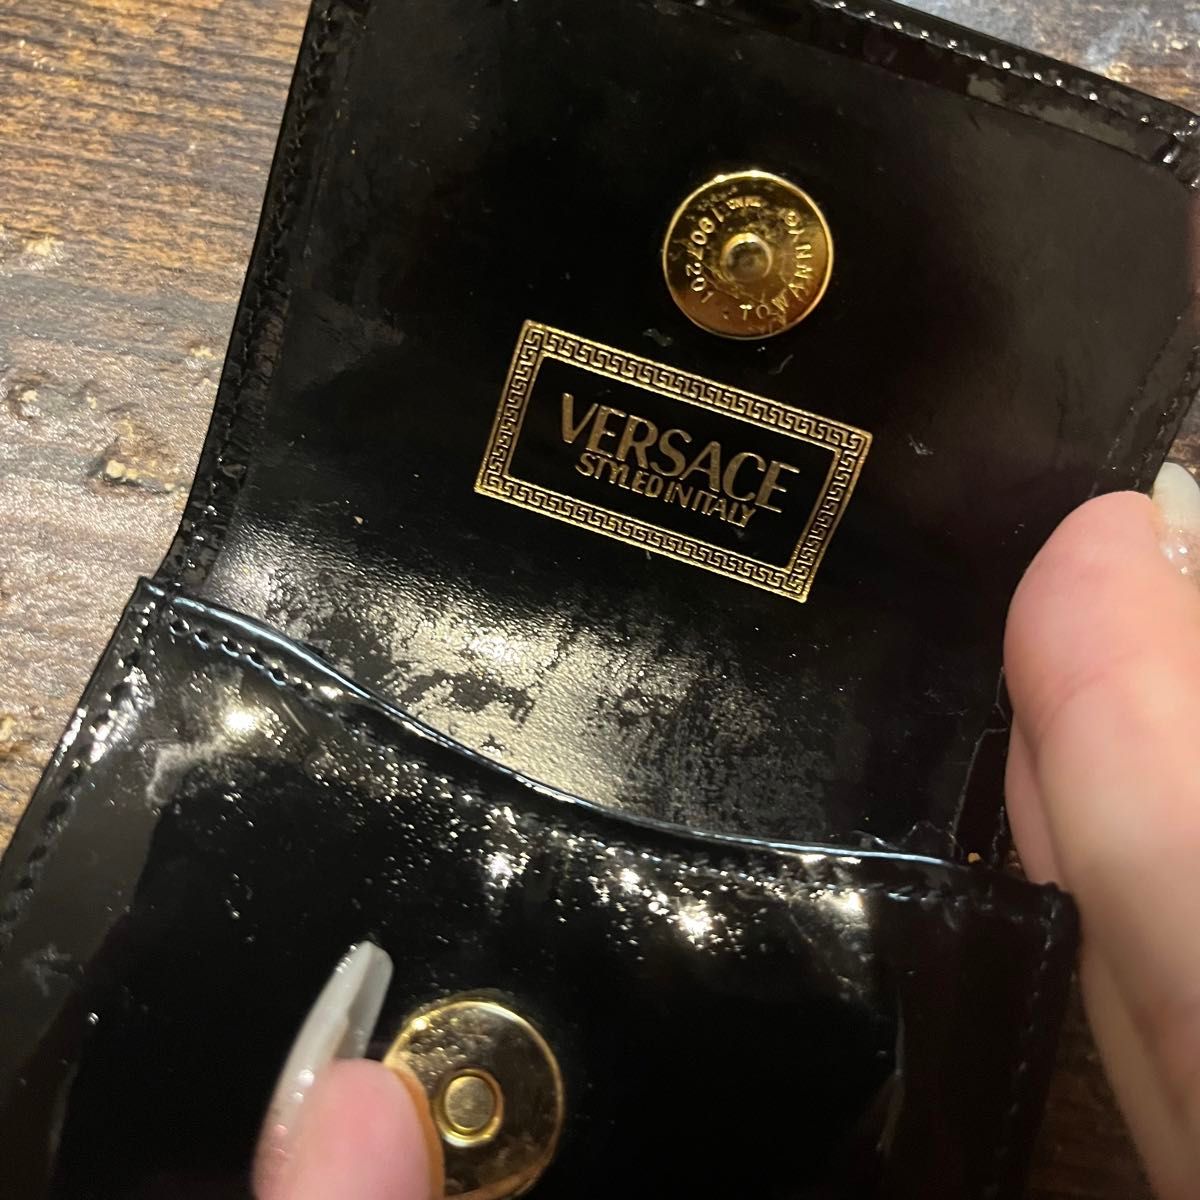 ヴェルサーチ VERSACE シガレットケース 希少 ブラック ゴールド 使用感あり 劣化あり 近年珍しいシガレットケース